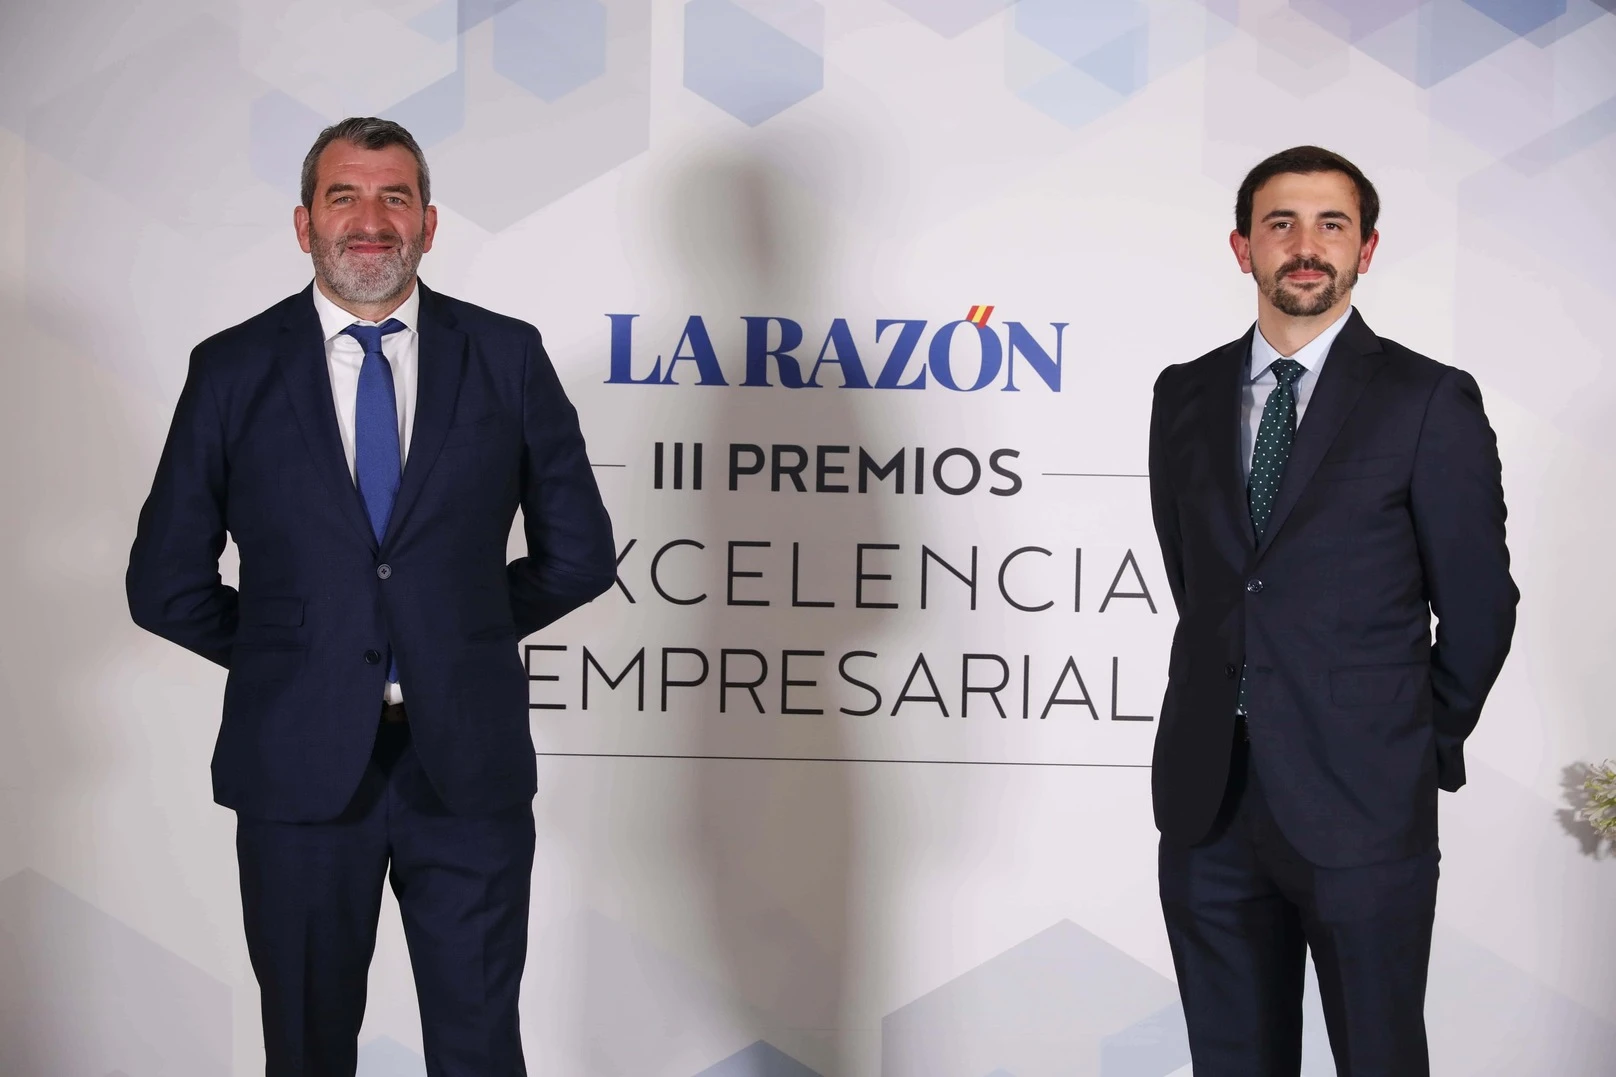 Balearhouse, nationaler preis für hervorragende leistungen in der wirtschaft 2022 von der zeitung La Razón